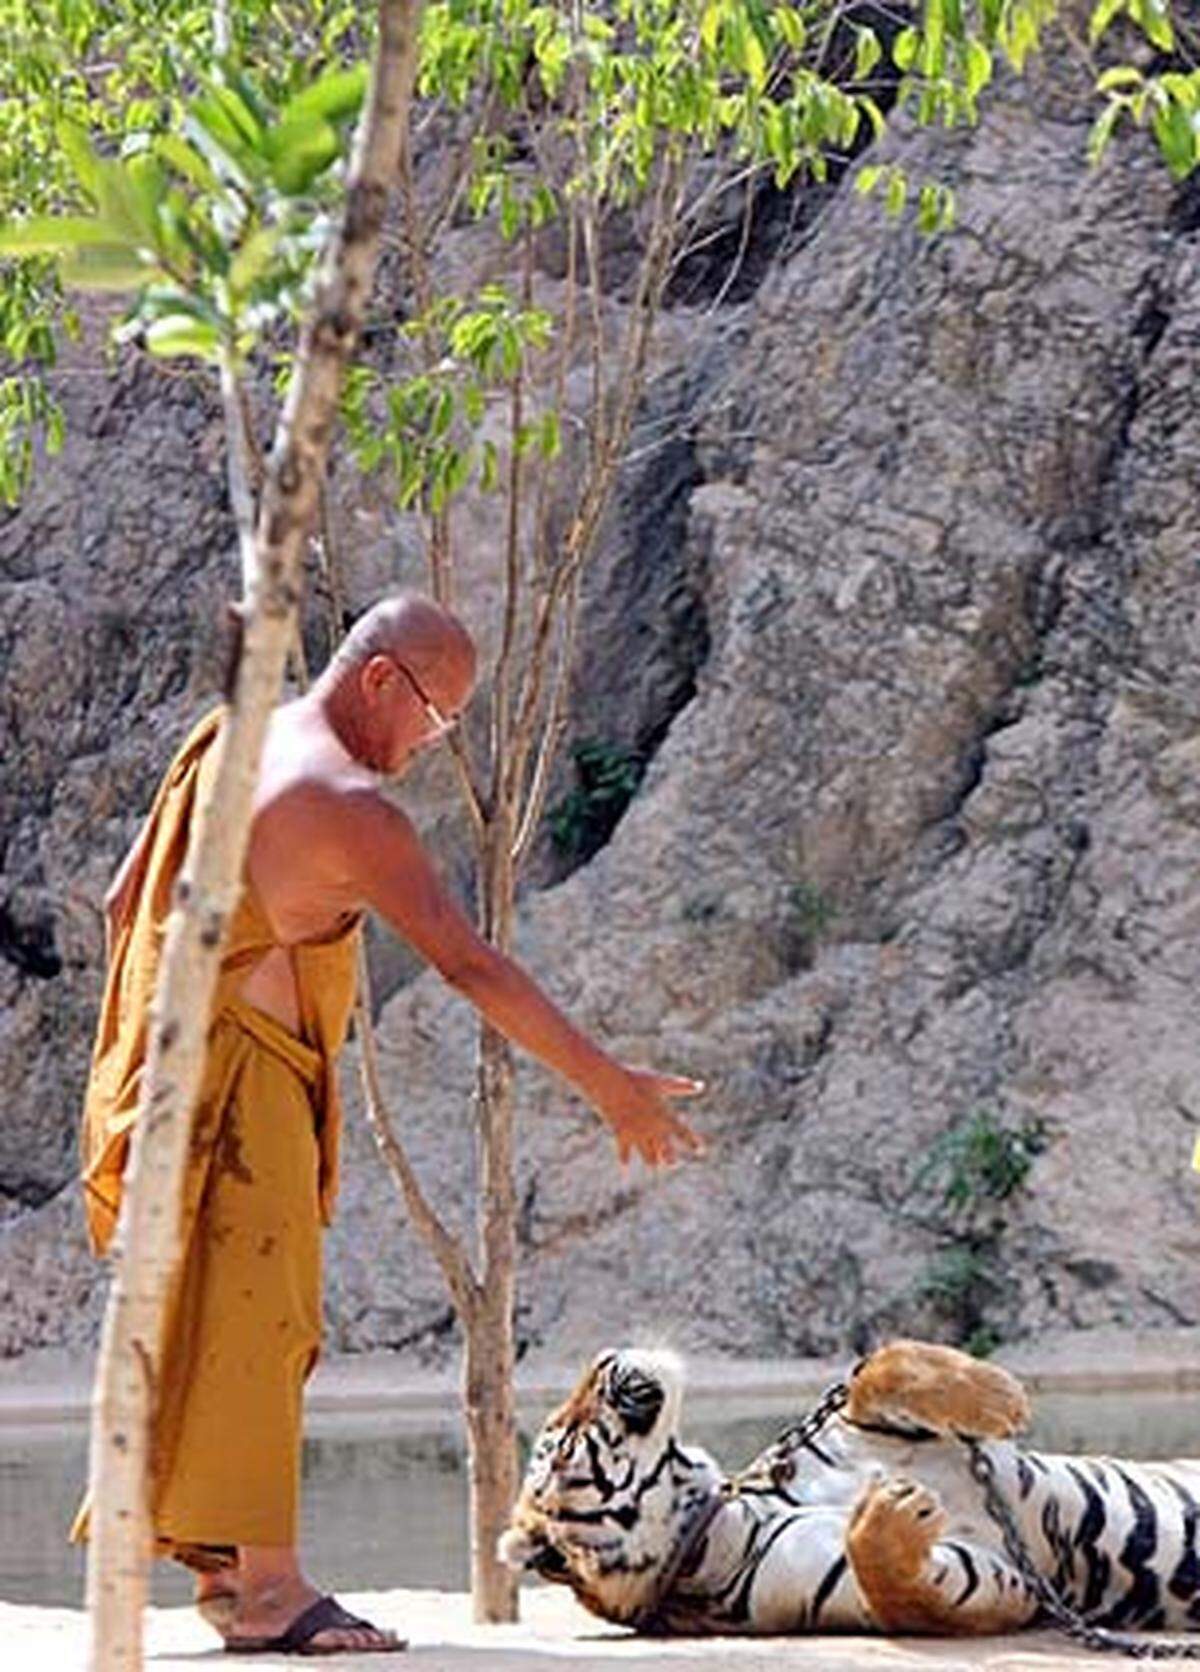 Der Trick, warum die Besucher die Tiger später streicheln können, ohne zerfleischt zu werden, ist einfach, sagt der Klostervorsteher Chan.